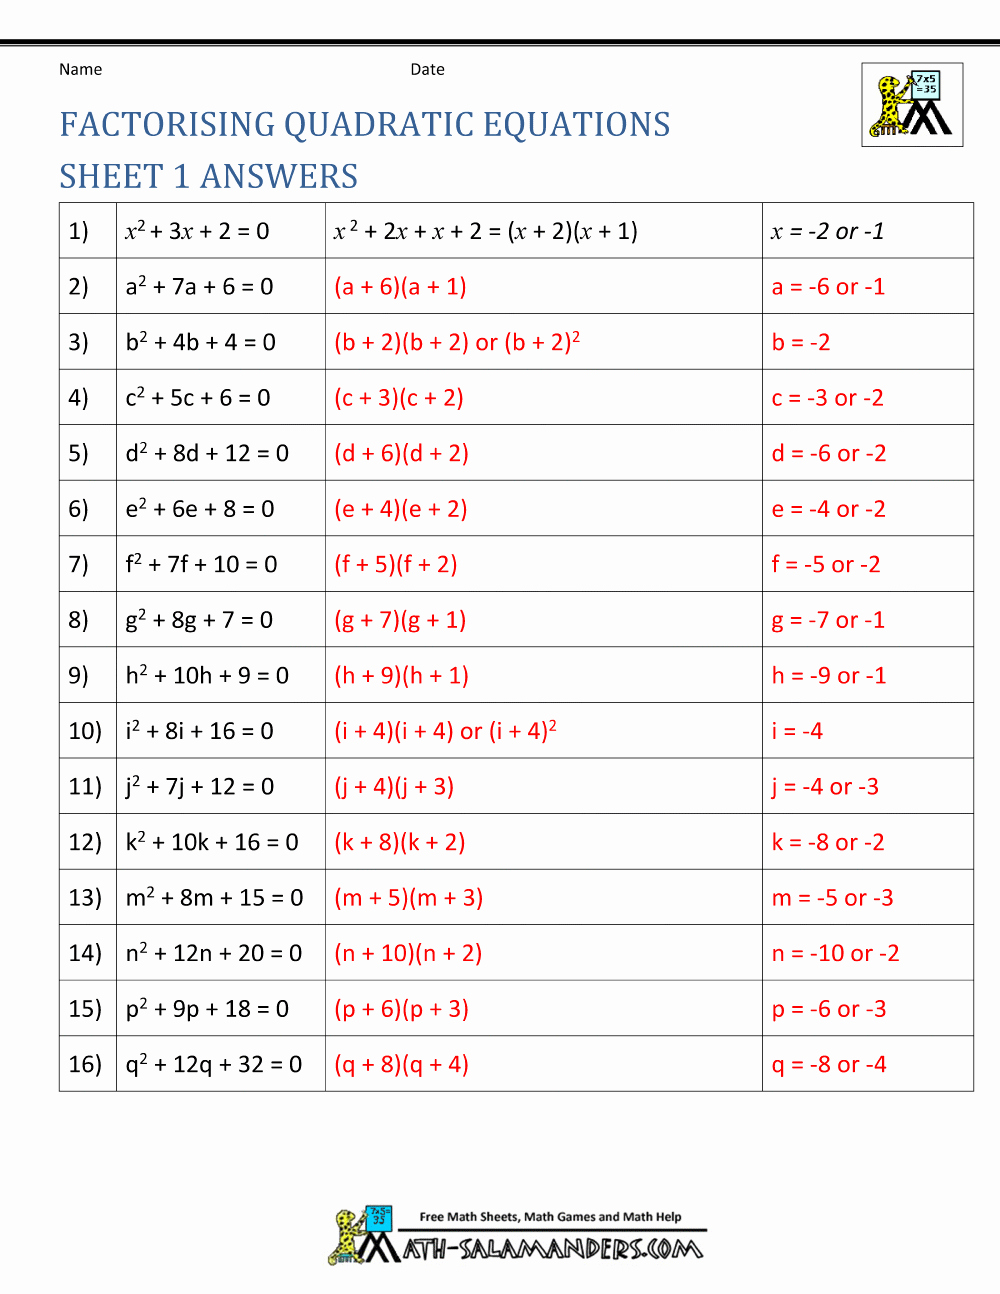 Quadratic formula Worksheet with Answers Fresh Factoring Quadratic Equations